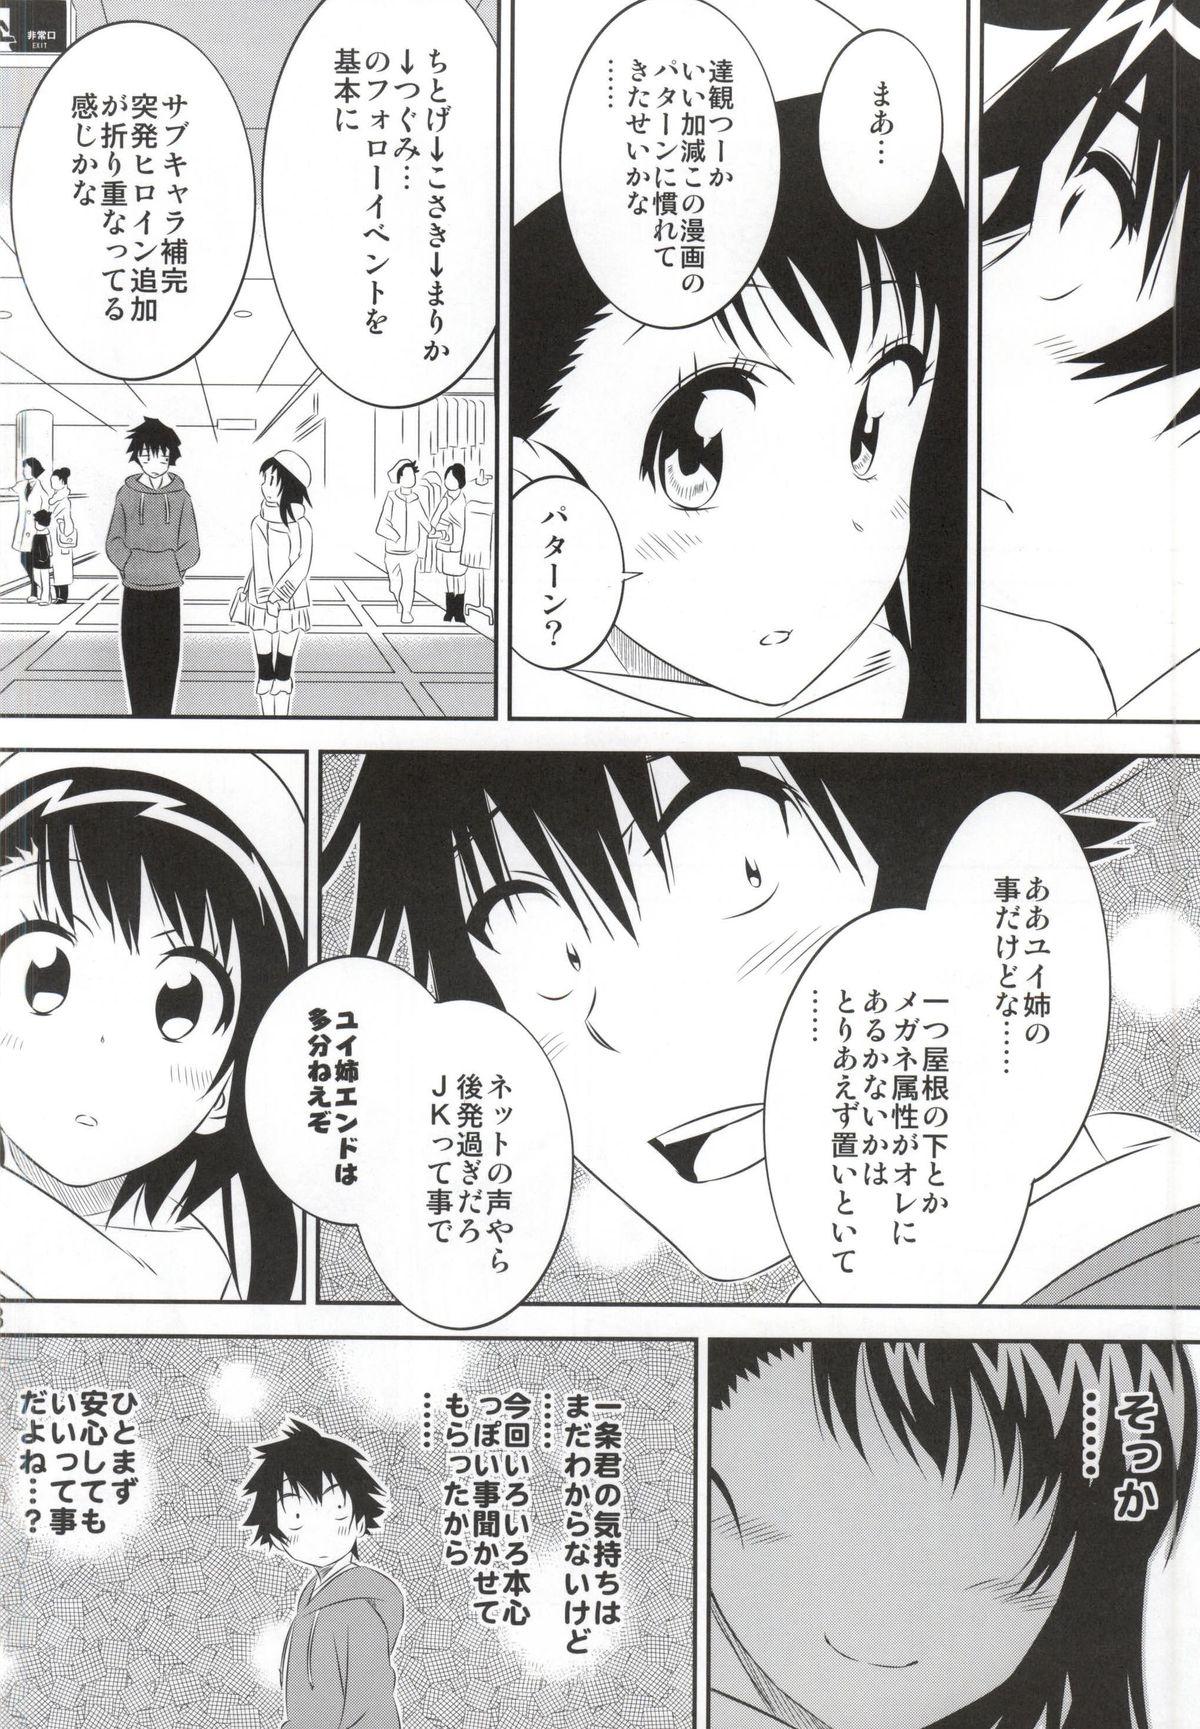 Strapon Kosaki-chan no Yuuutsu 4 - Nisekoi Free Amateur - Page 7